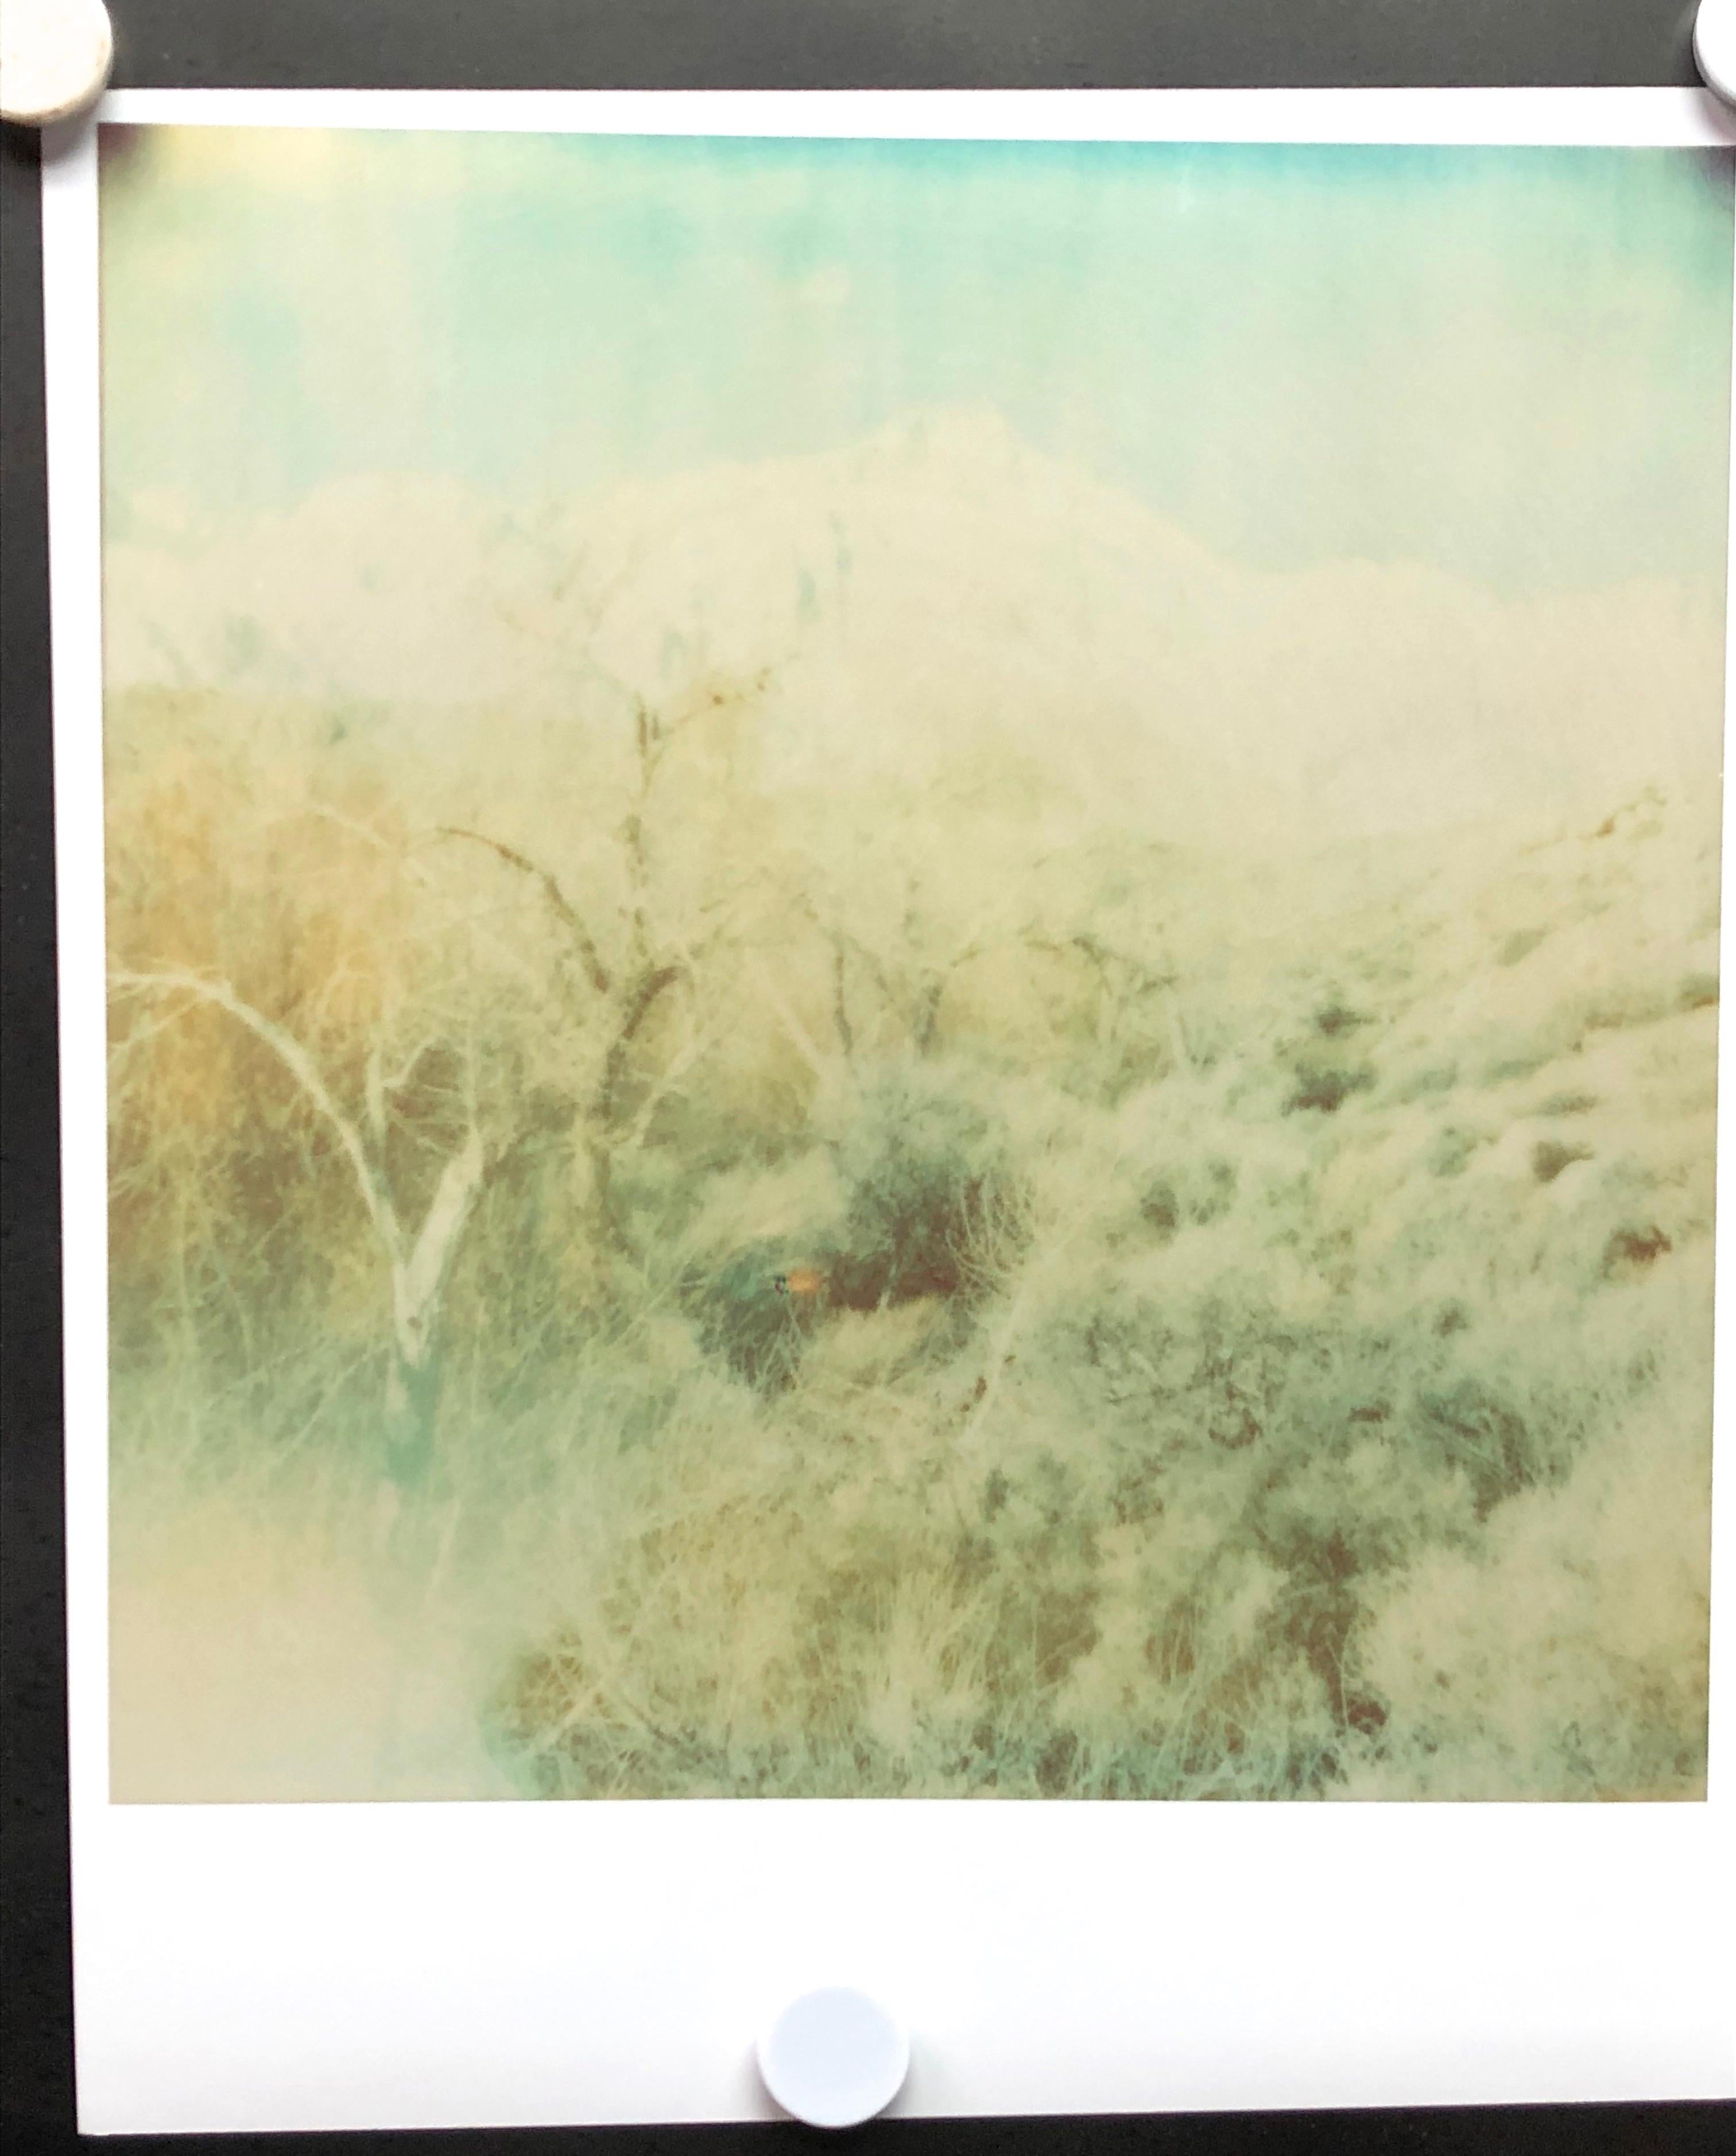 Wind Swep (Wastelands) - diptych, Contemporary, Figurative, Polaroid, analog - Beige Landscape Photograph by Stefanie Schneider